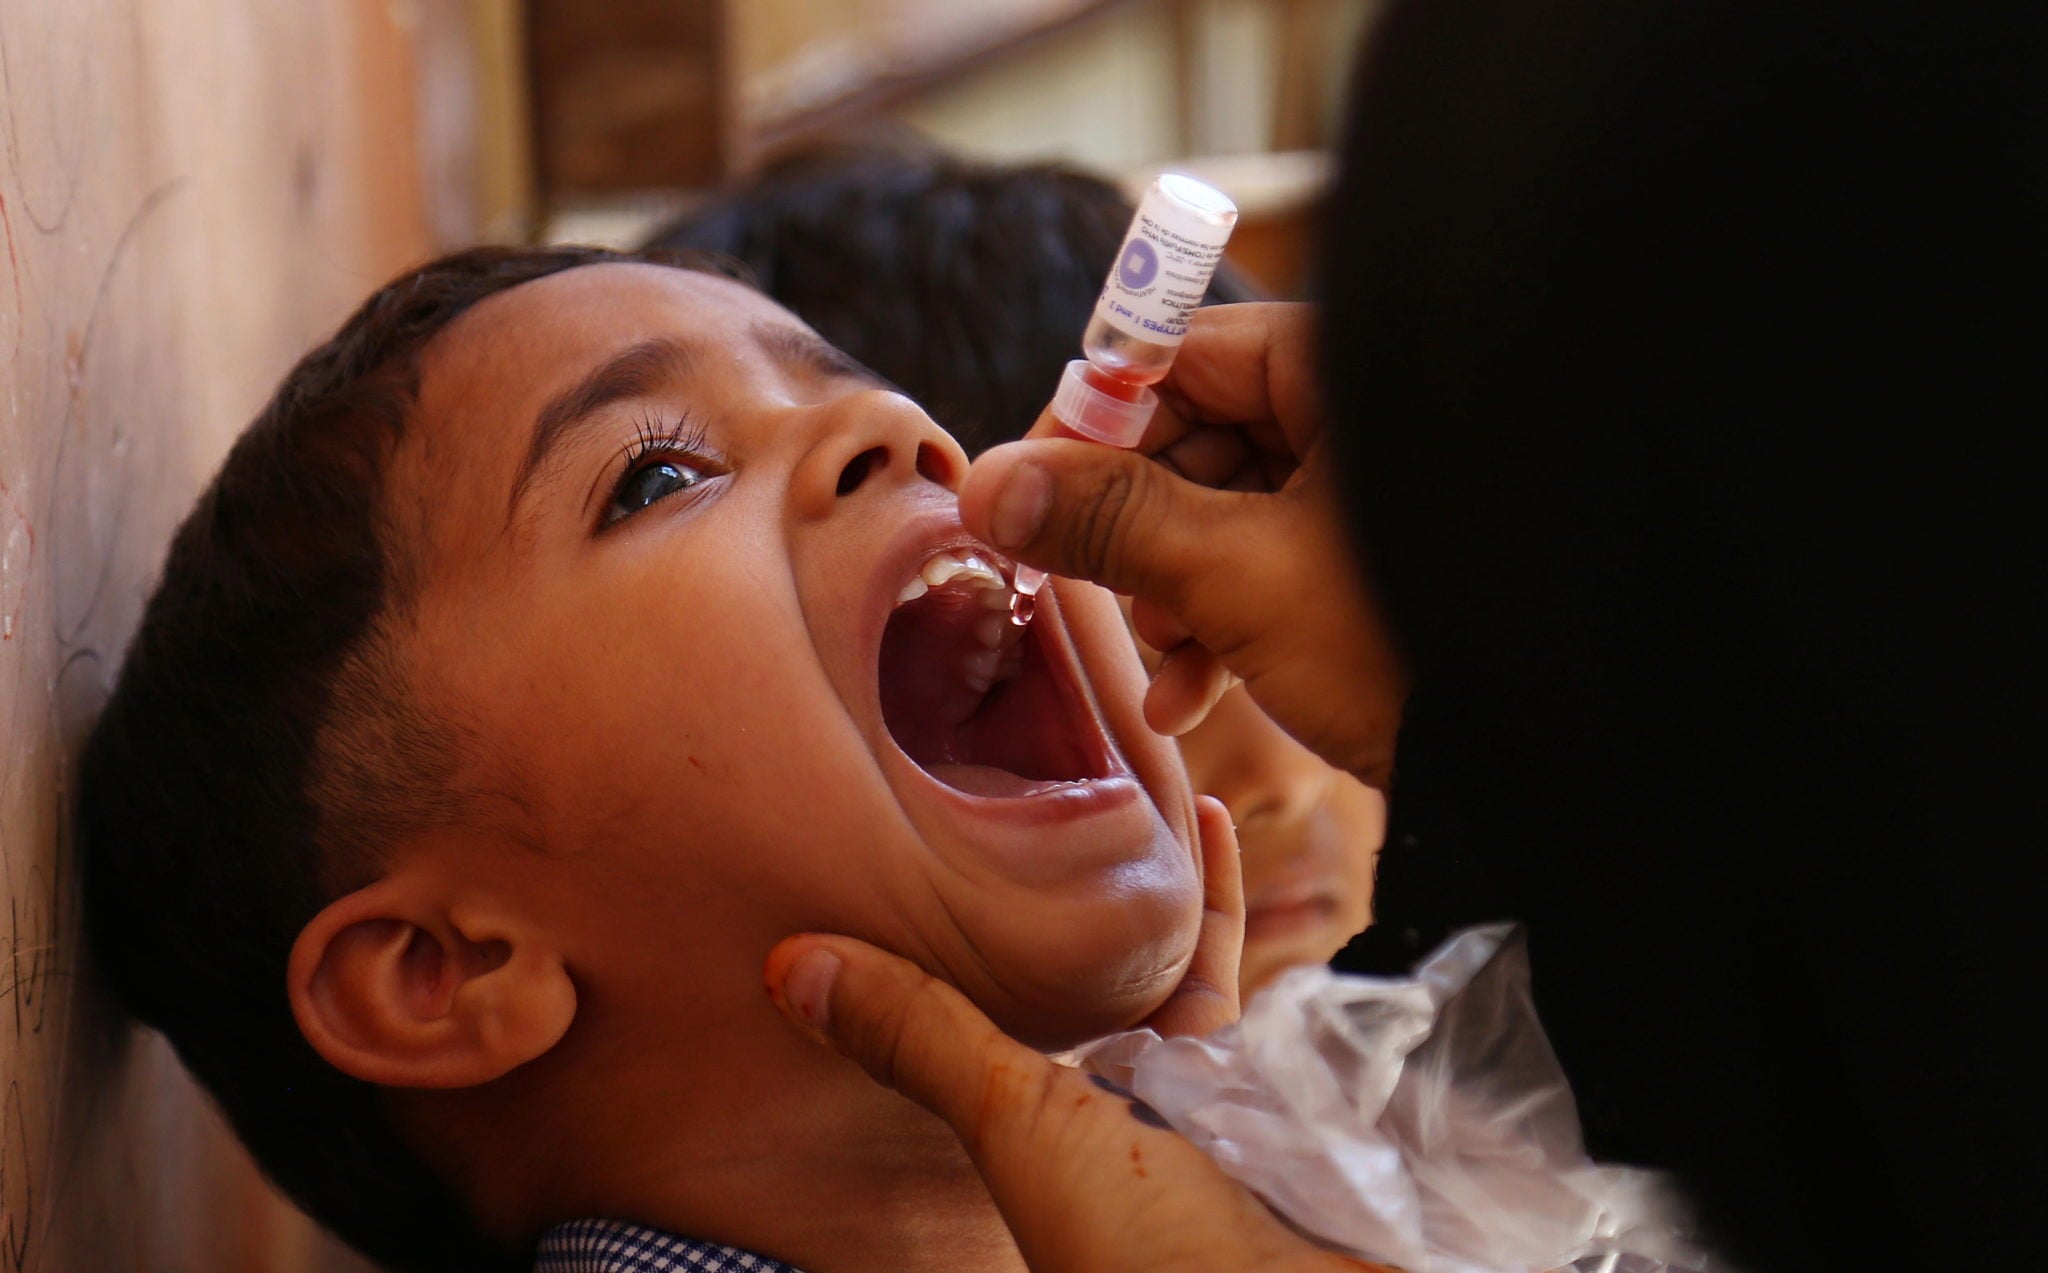 Szczepienie dzieci przeciwko polio - ogólnokrajowa kampania w Pakistanie, fot: Shahazaib Akber, PAP/EPA 